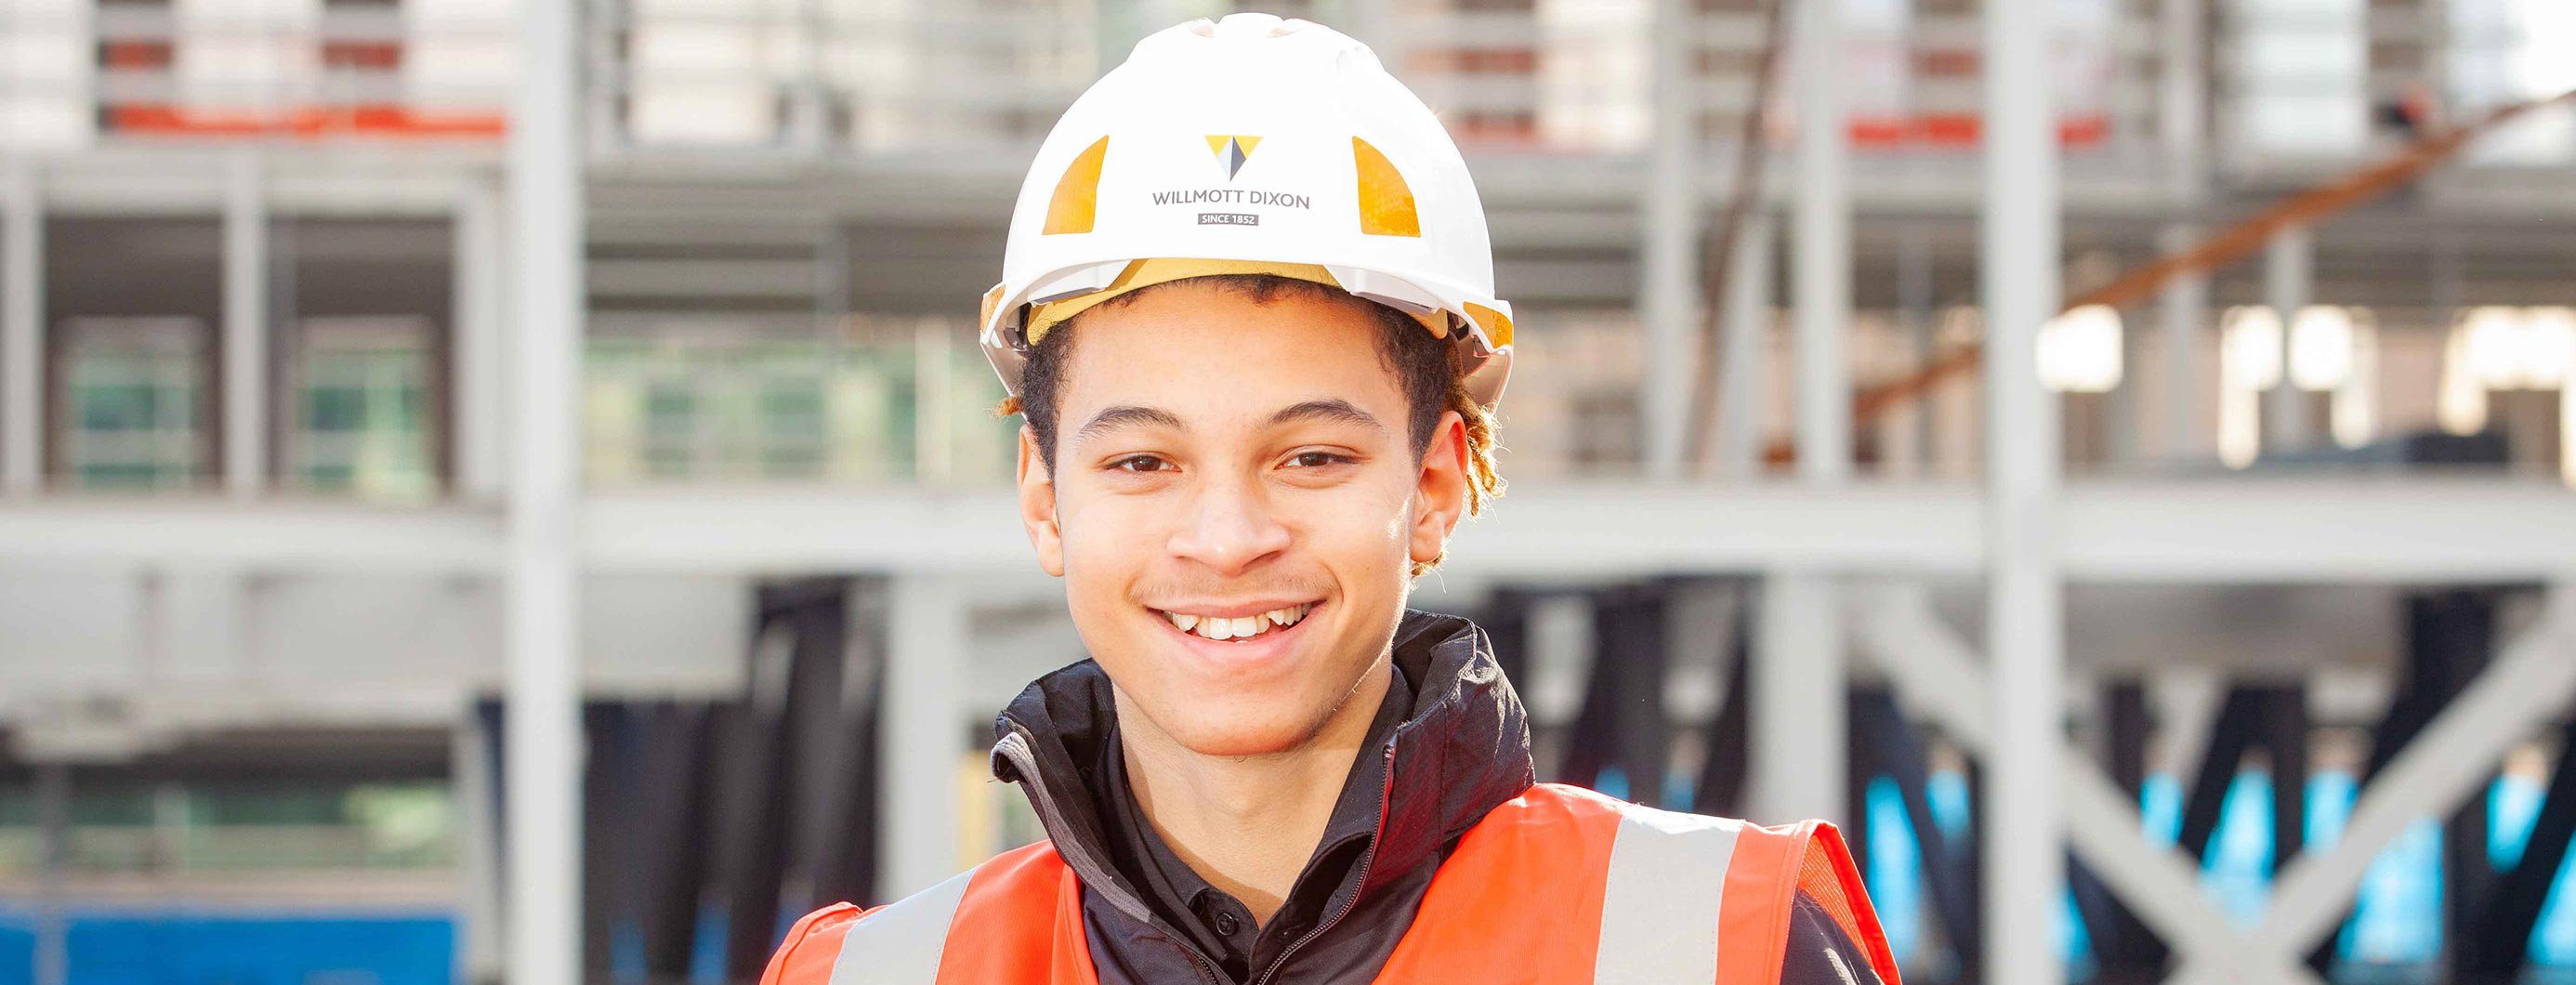 Portrait image of a construction student